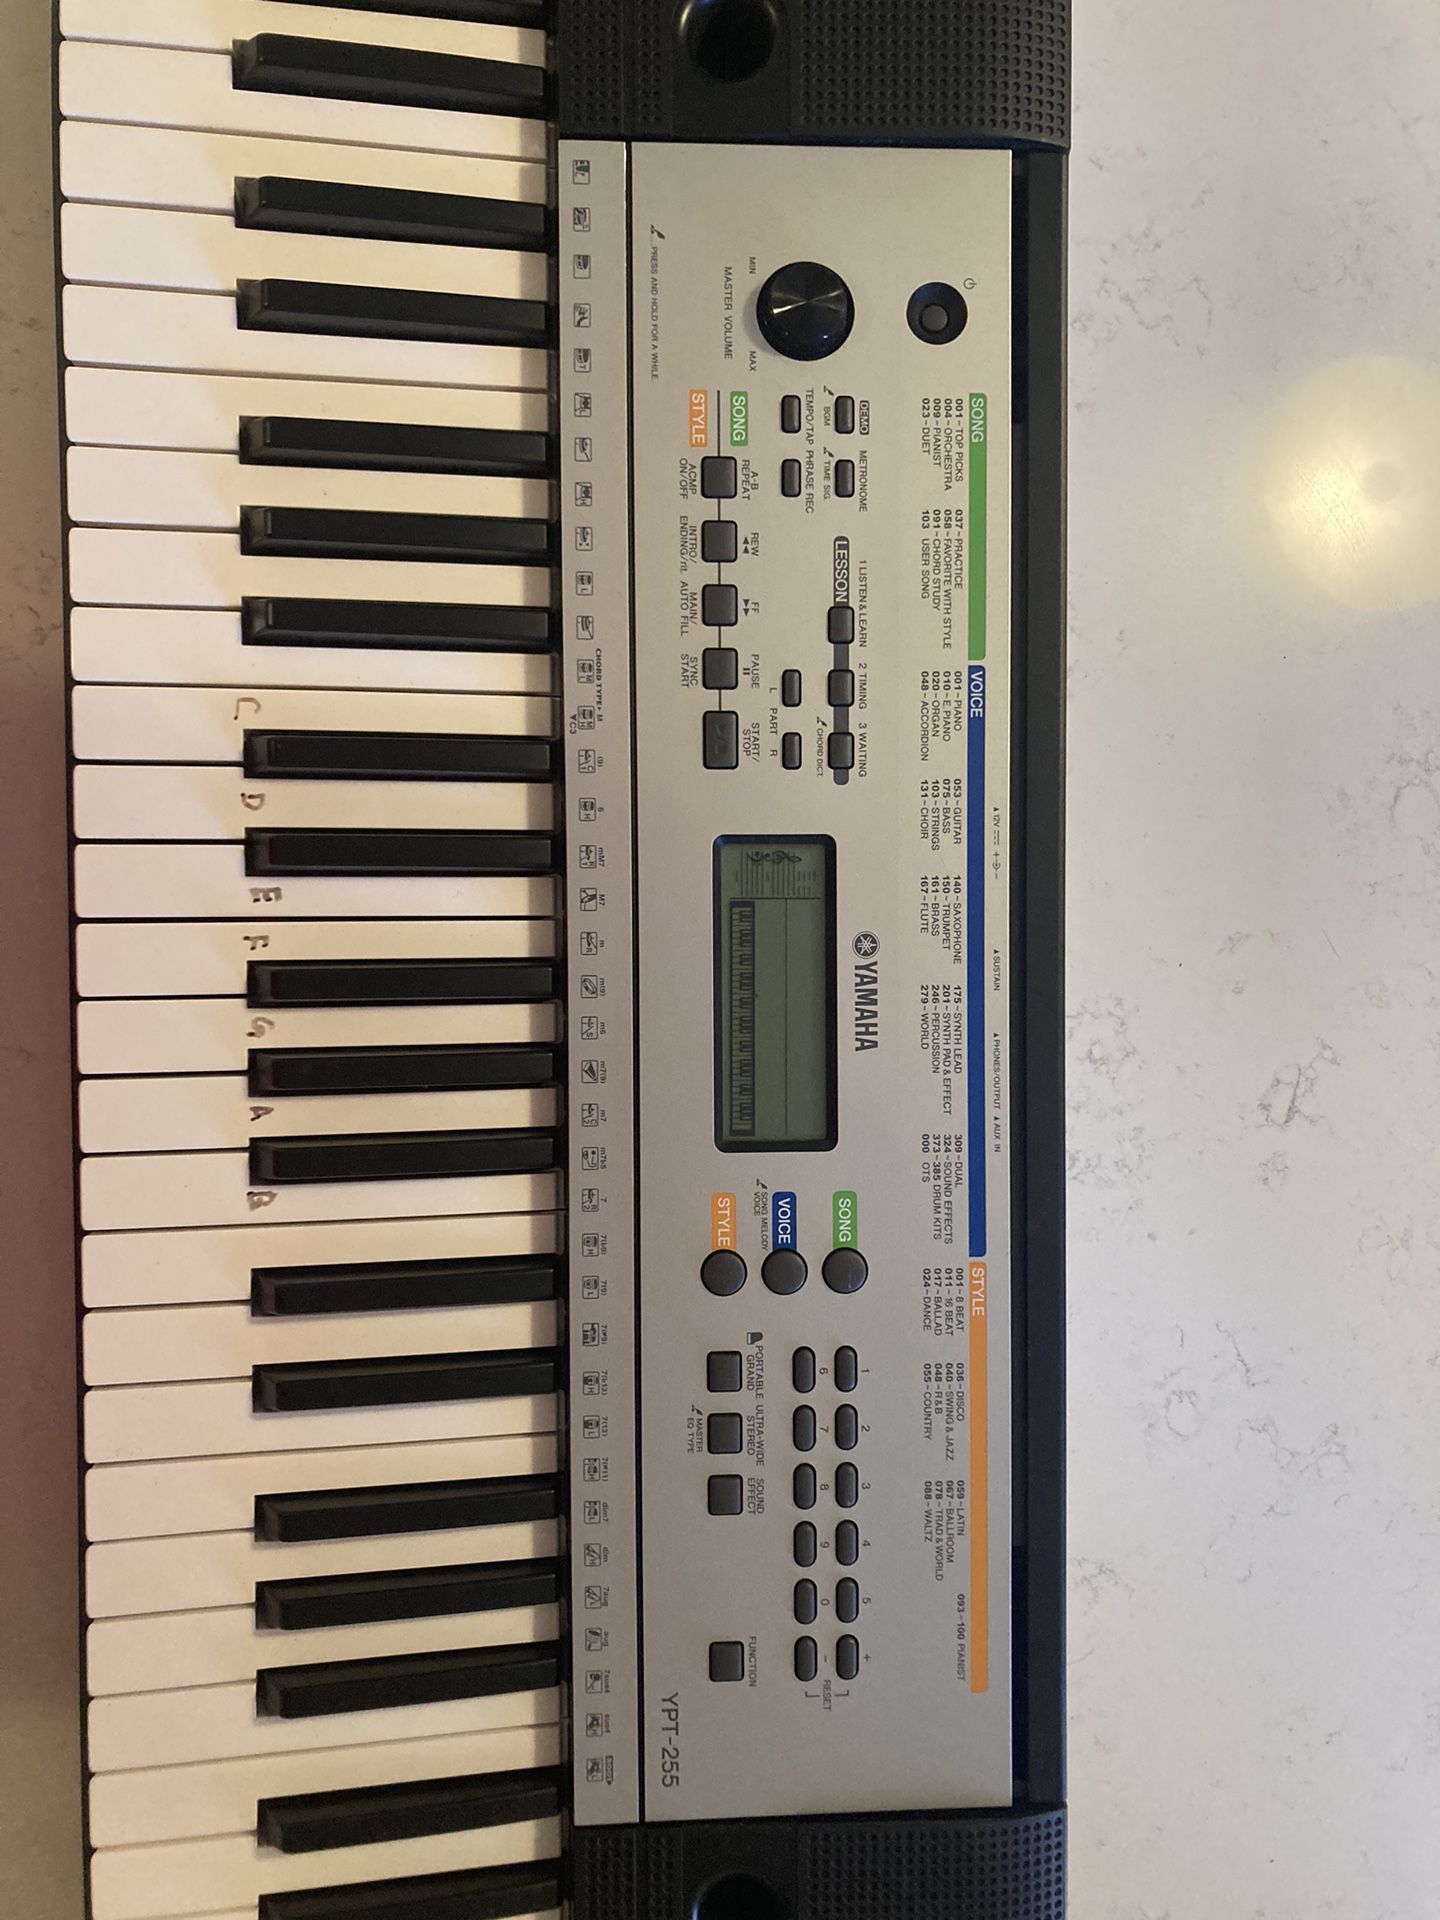 Keyboard Yamaha YPT-255 Portable Keyboard 